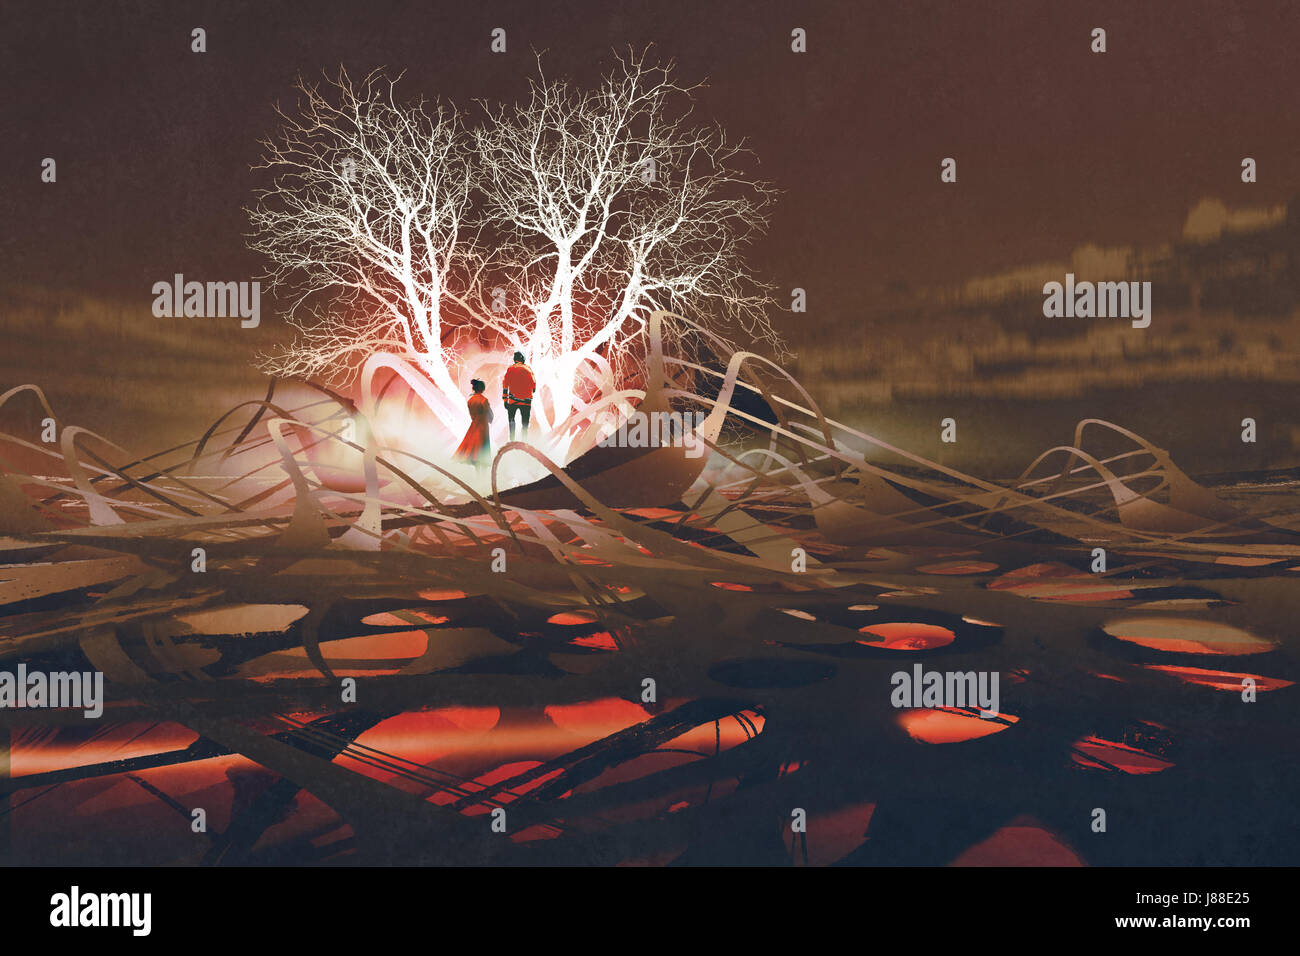 Il giovane in piedi di fronte ad alberi luminosi nel paesaggio abstact con arte digitale stile, illustrazione pittura Foto Stock